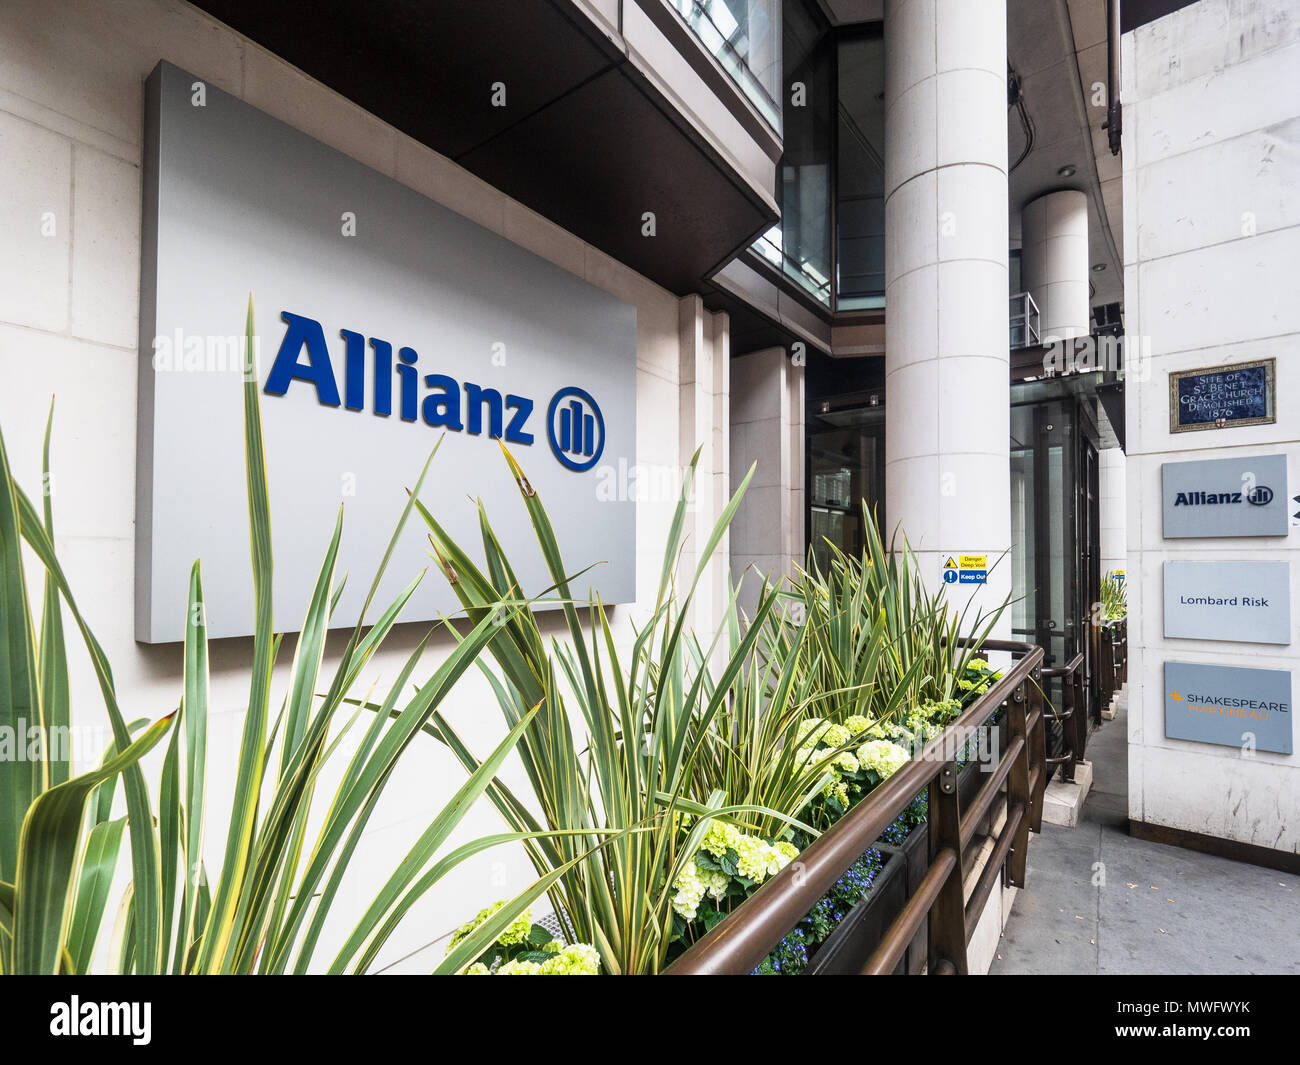 Allianz Insurance London ist in der Gracechurch Street 60 im Finanzdistrikt der City of London ansässig. Allianz Global Corporate & Specialty. Stockfoto